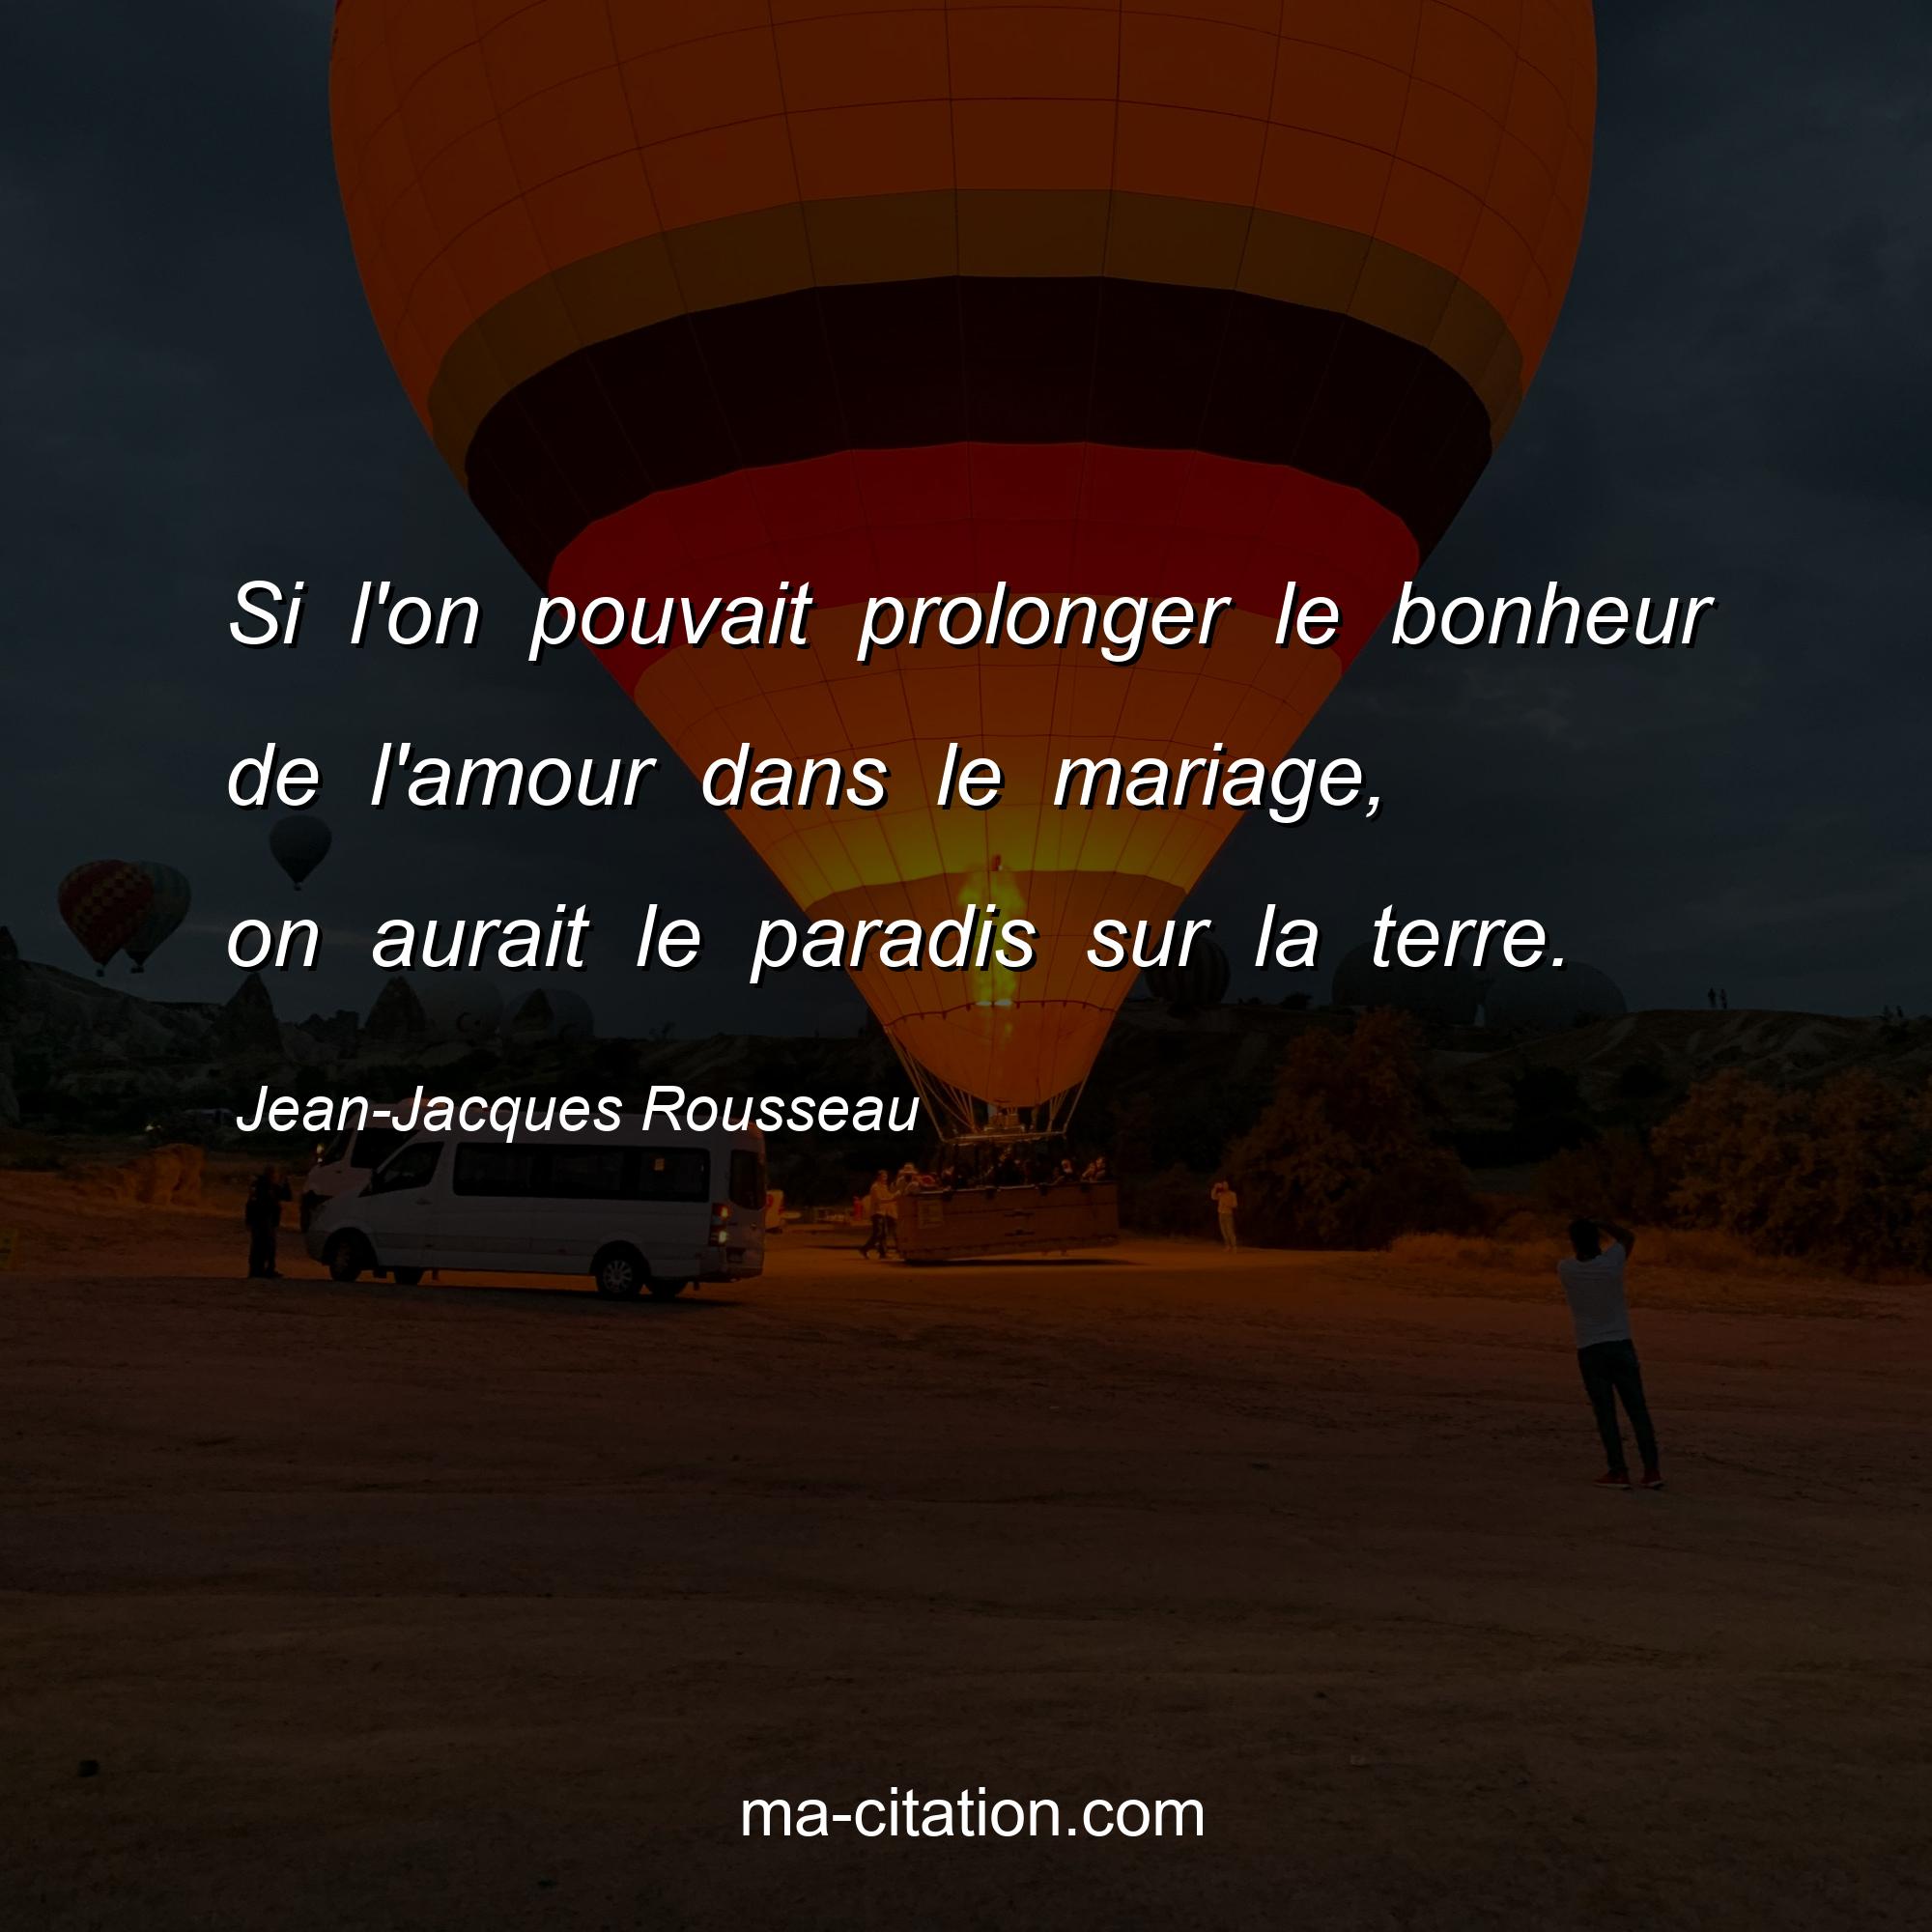 Jean-Jacques Rousseau : Si l'on pouvait prolonger le bonheur de l'amour dans le mariage, on aurait le paradis sur la terre.